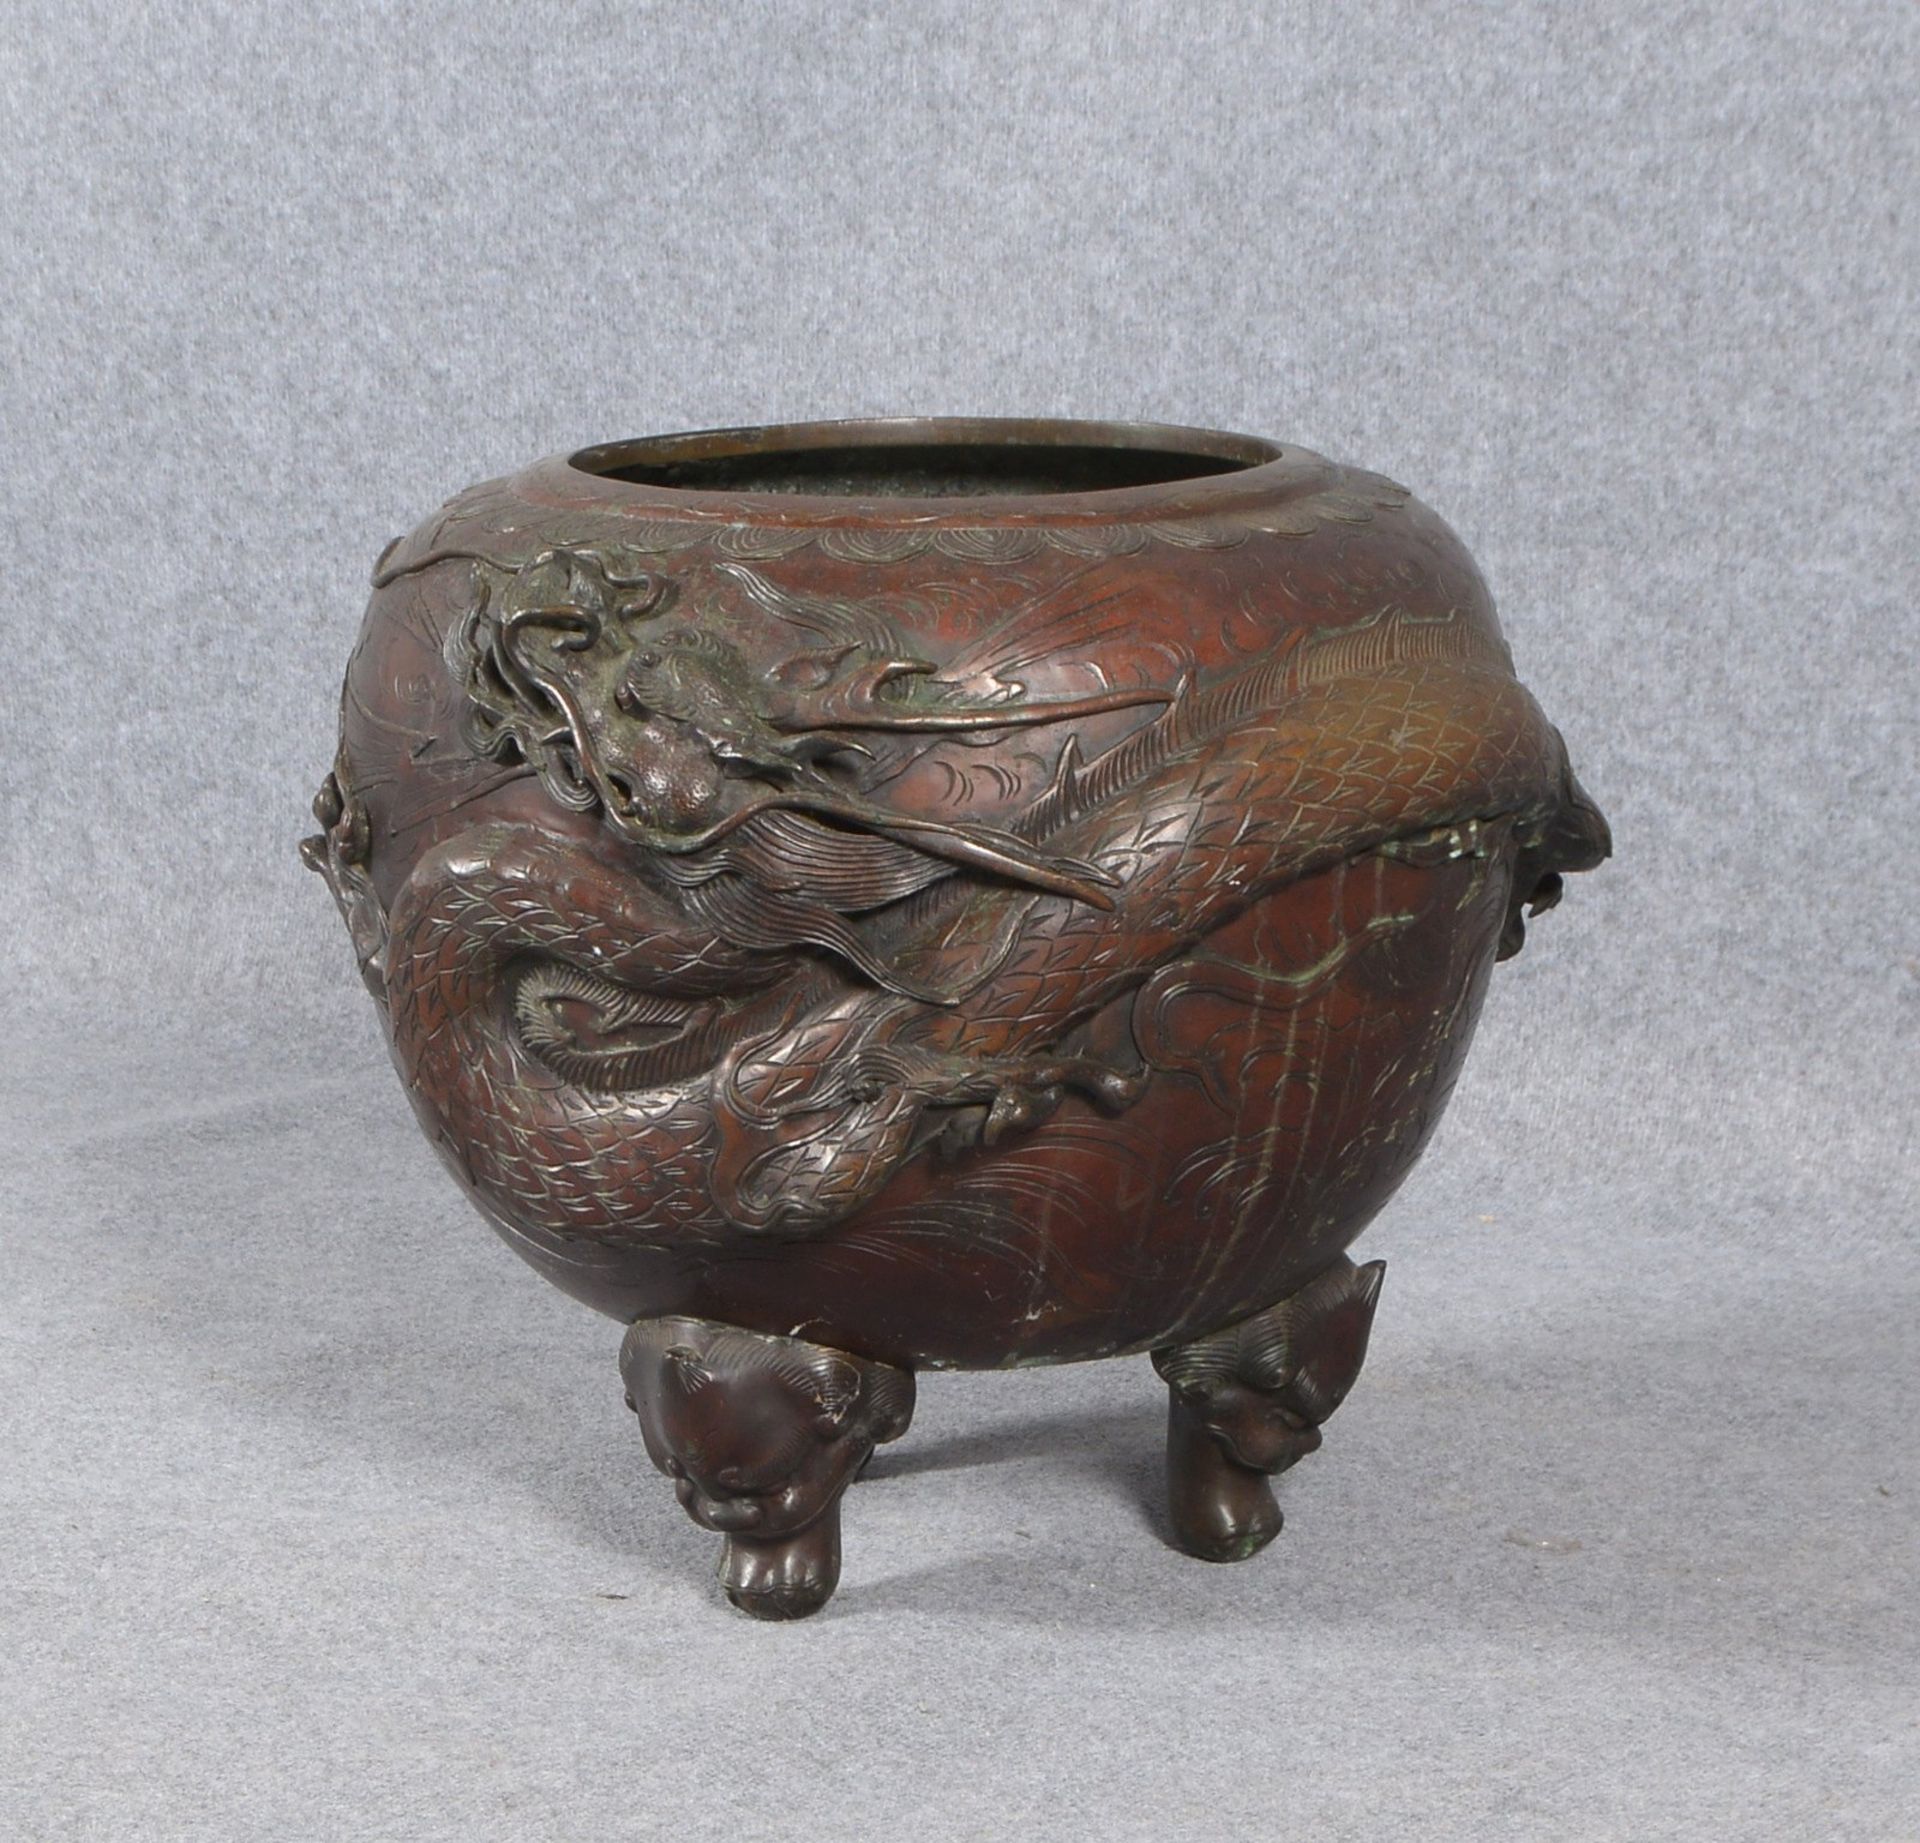 Gr. Fishbowl, Metallguss pat., mit starkem Drachen-Reliefdekor, auf 3x figürl. Füßen - Bild 2 aus 2